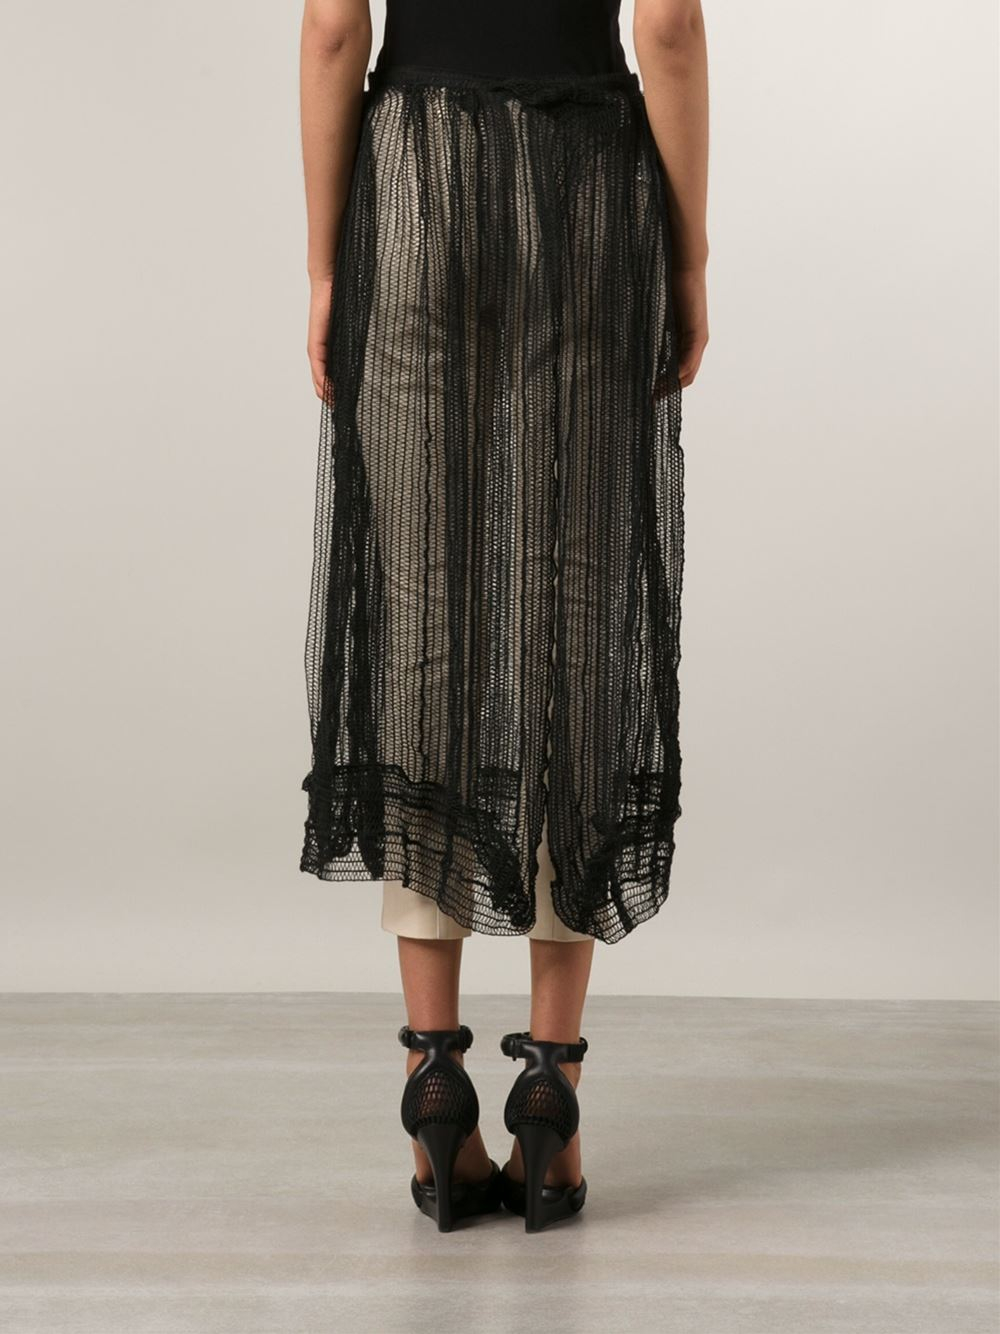 Yohji Yamamoto Sheer Net Skirt in Black - Lyst